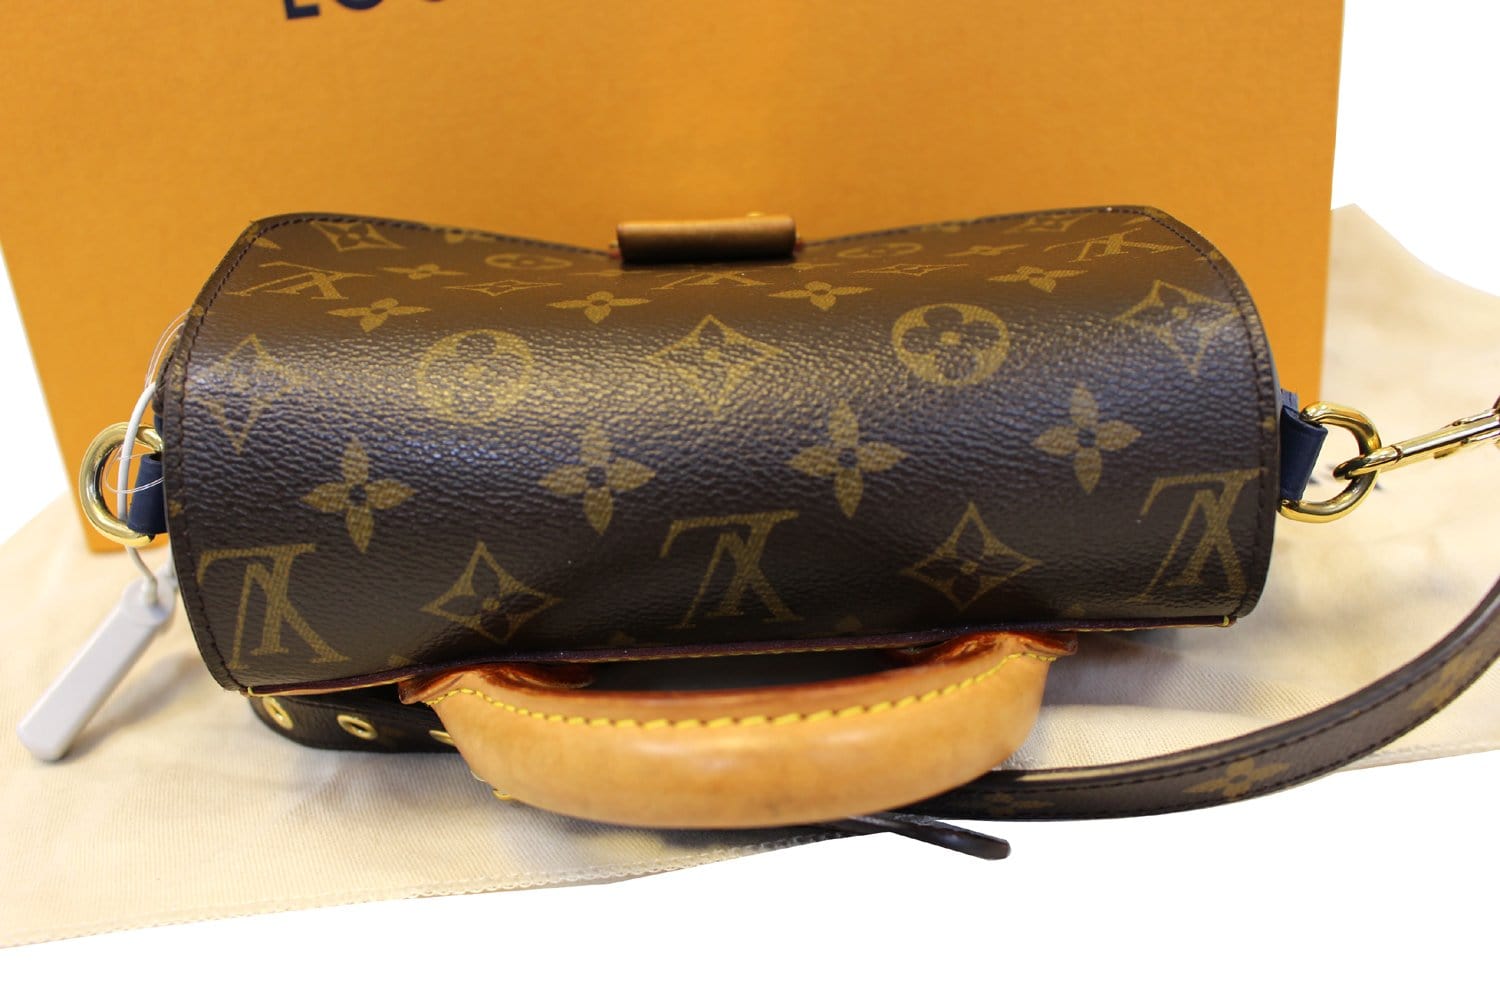 Louis Vuitton Monogram Canvas Eden Pm (Authentic Pre-Owned) - ShopStyle  Shoulder Bags